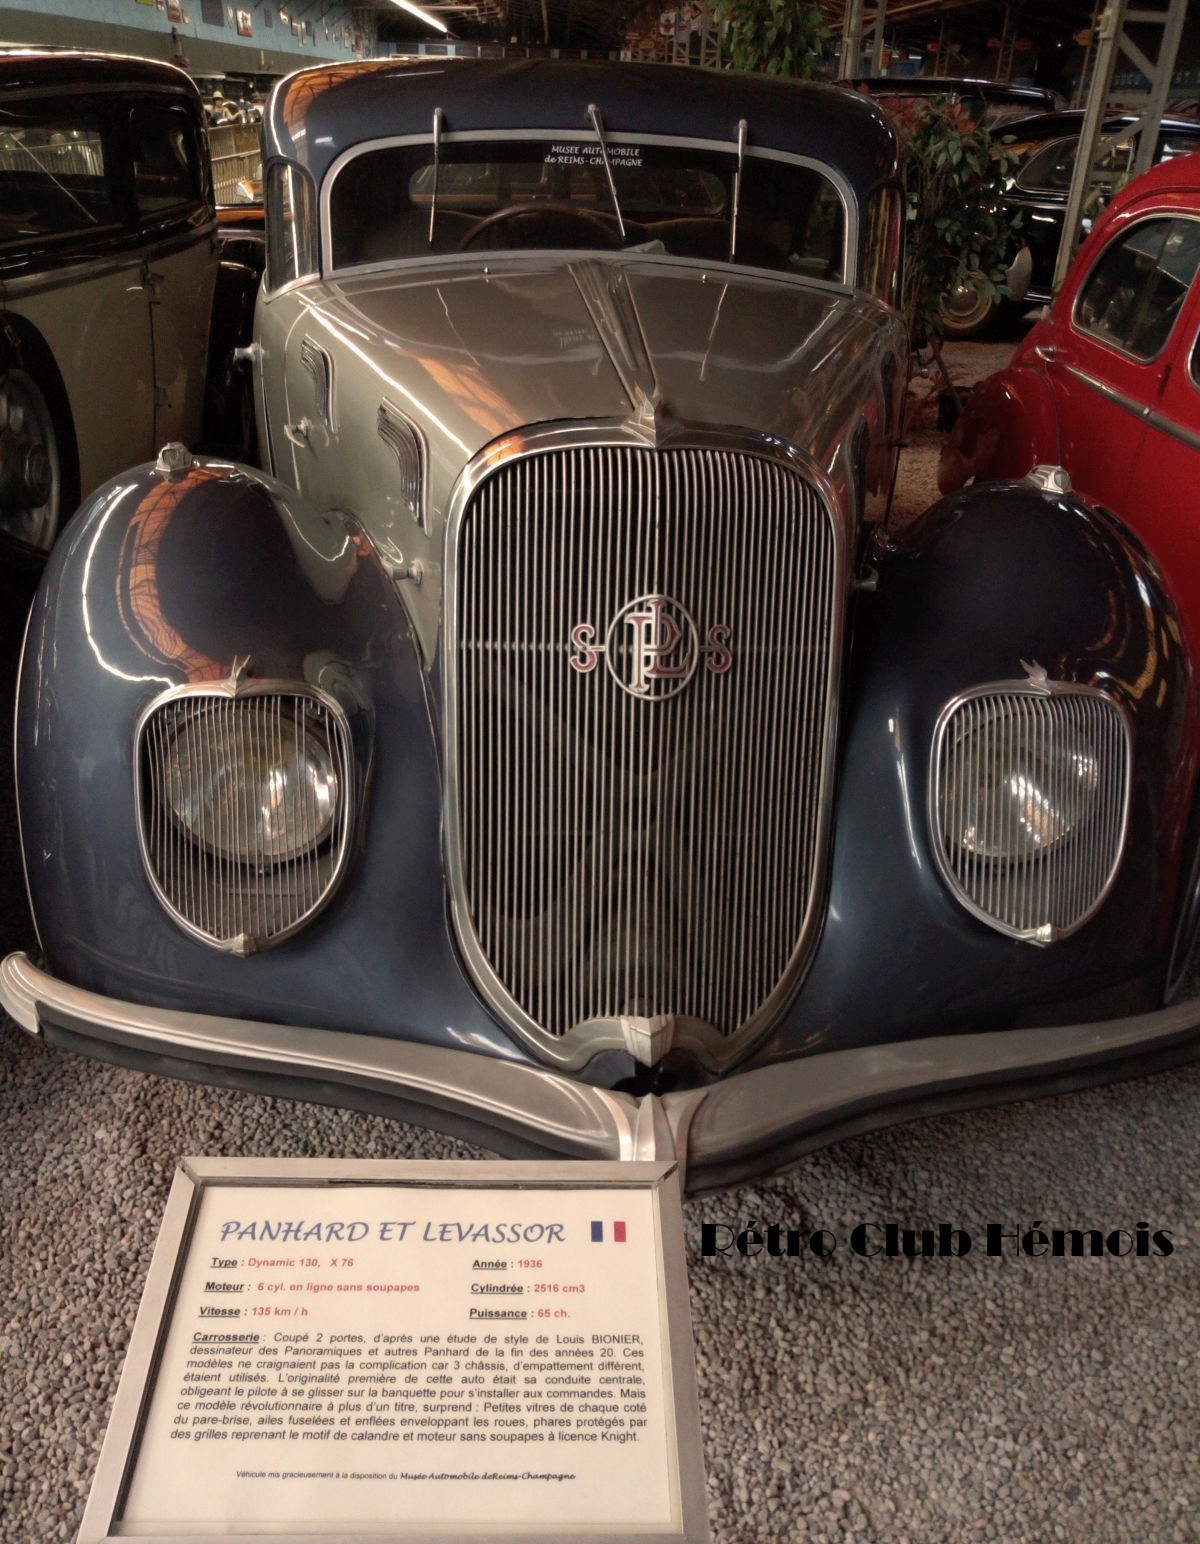 Le Rétro Club Hémois en sortie au musée de l'automobile de Reims - 29 septembre 2019 Img_2061